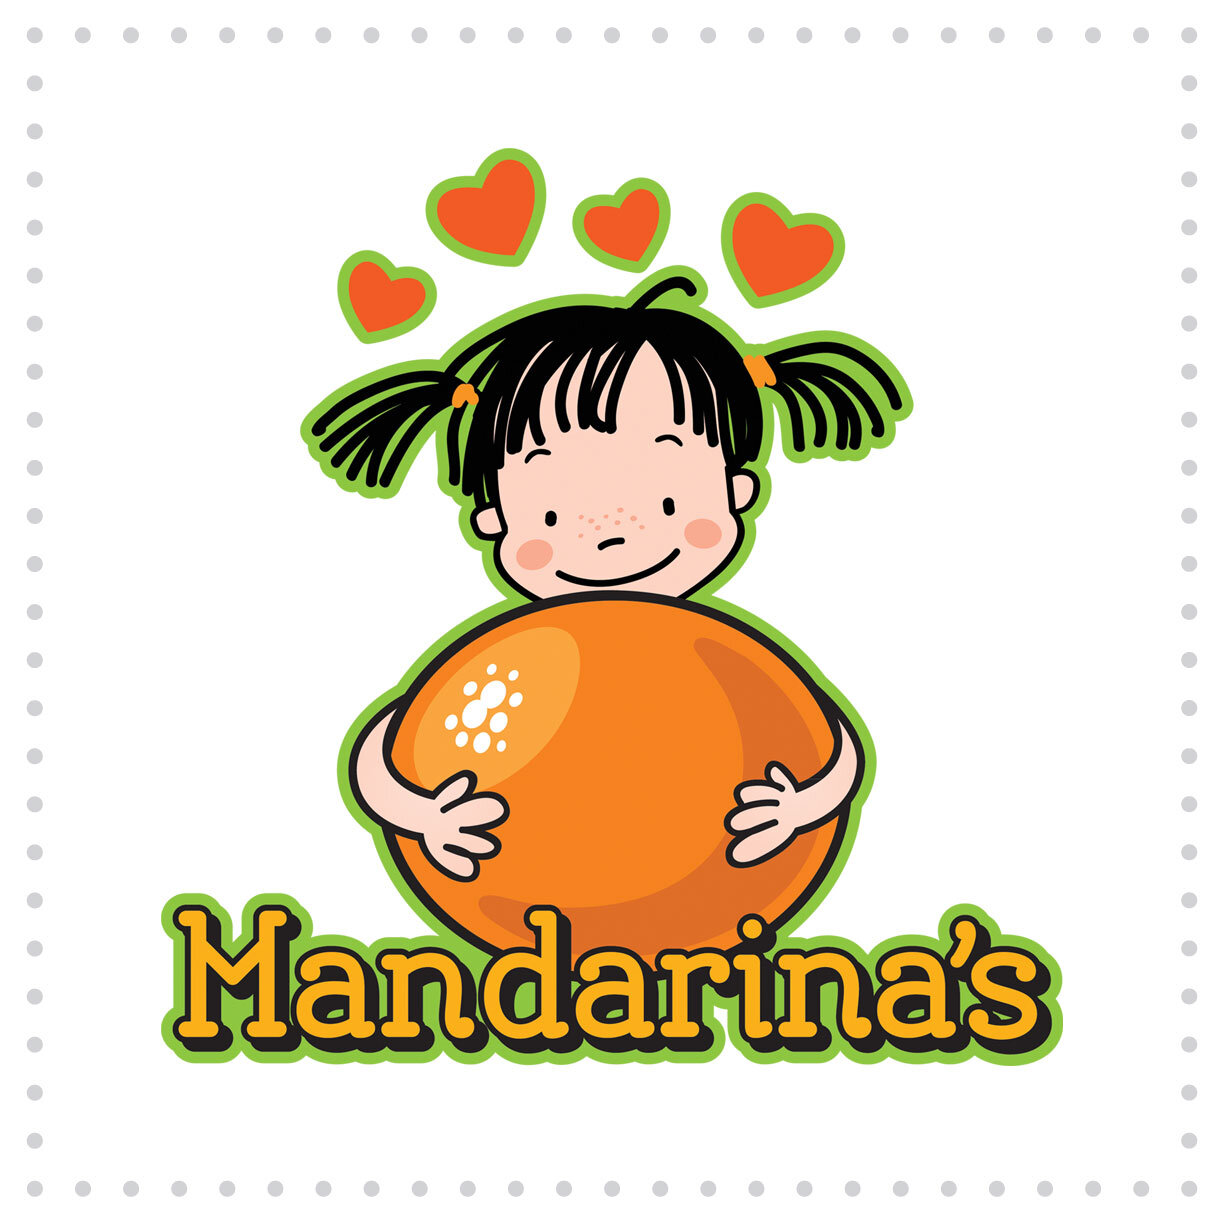 Ball-CharacterDesign-Mandarinas.jpg